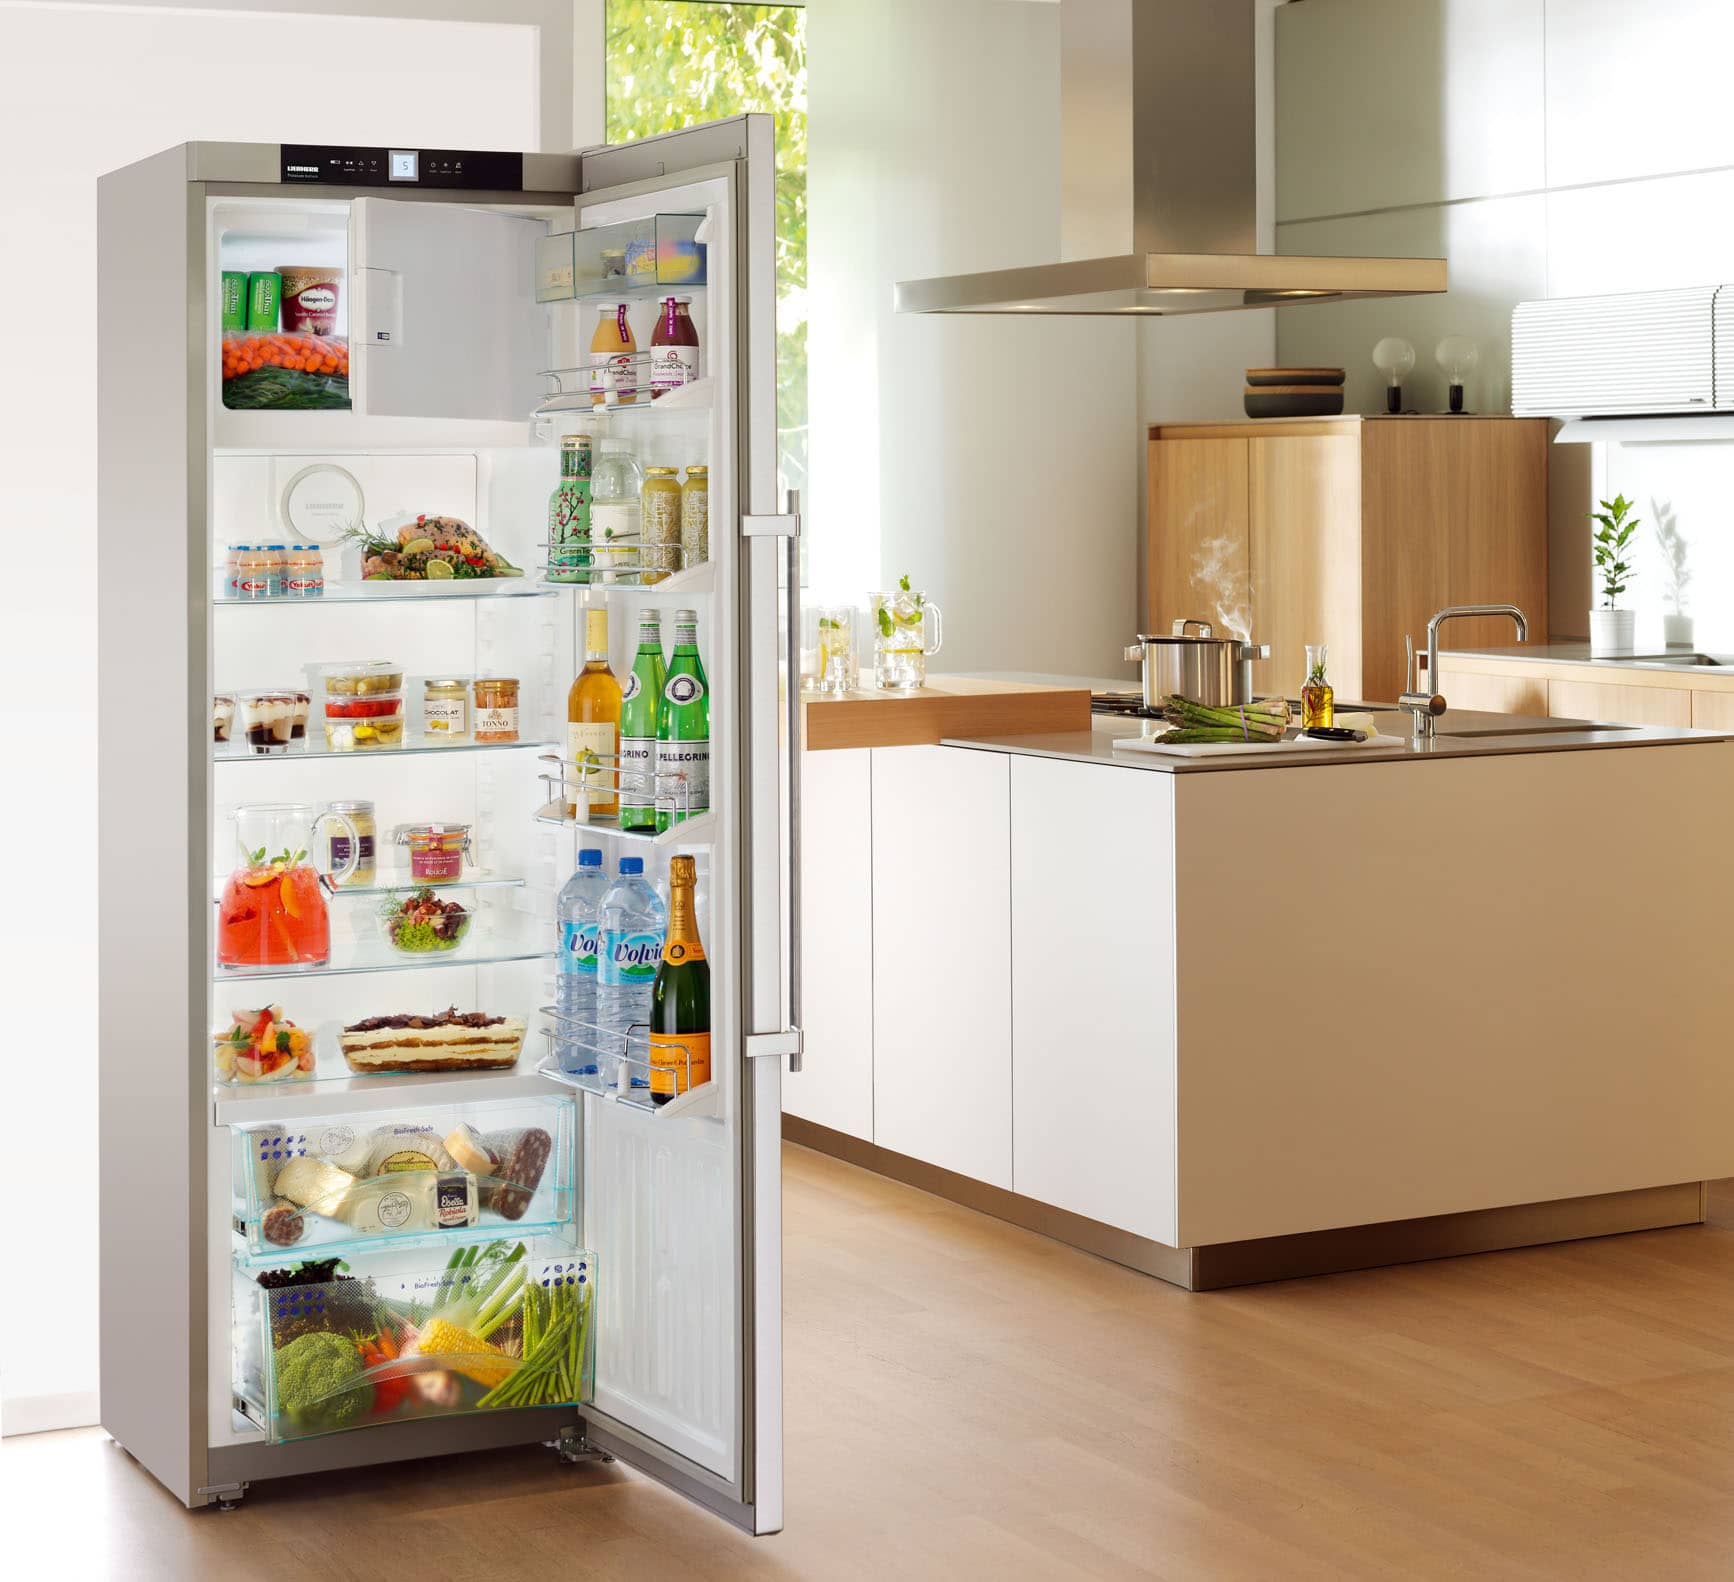 Лучший холодильник для дома в 2021 году: какую модель стоит купить? Обзор